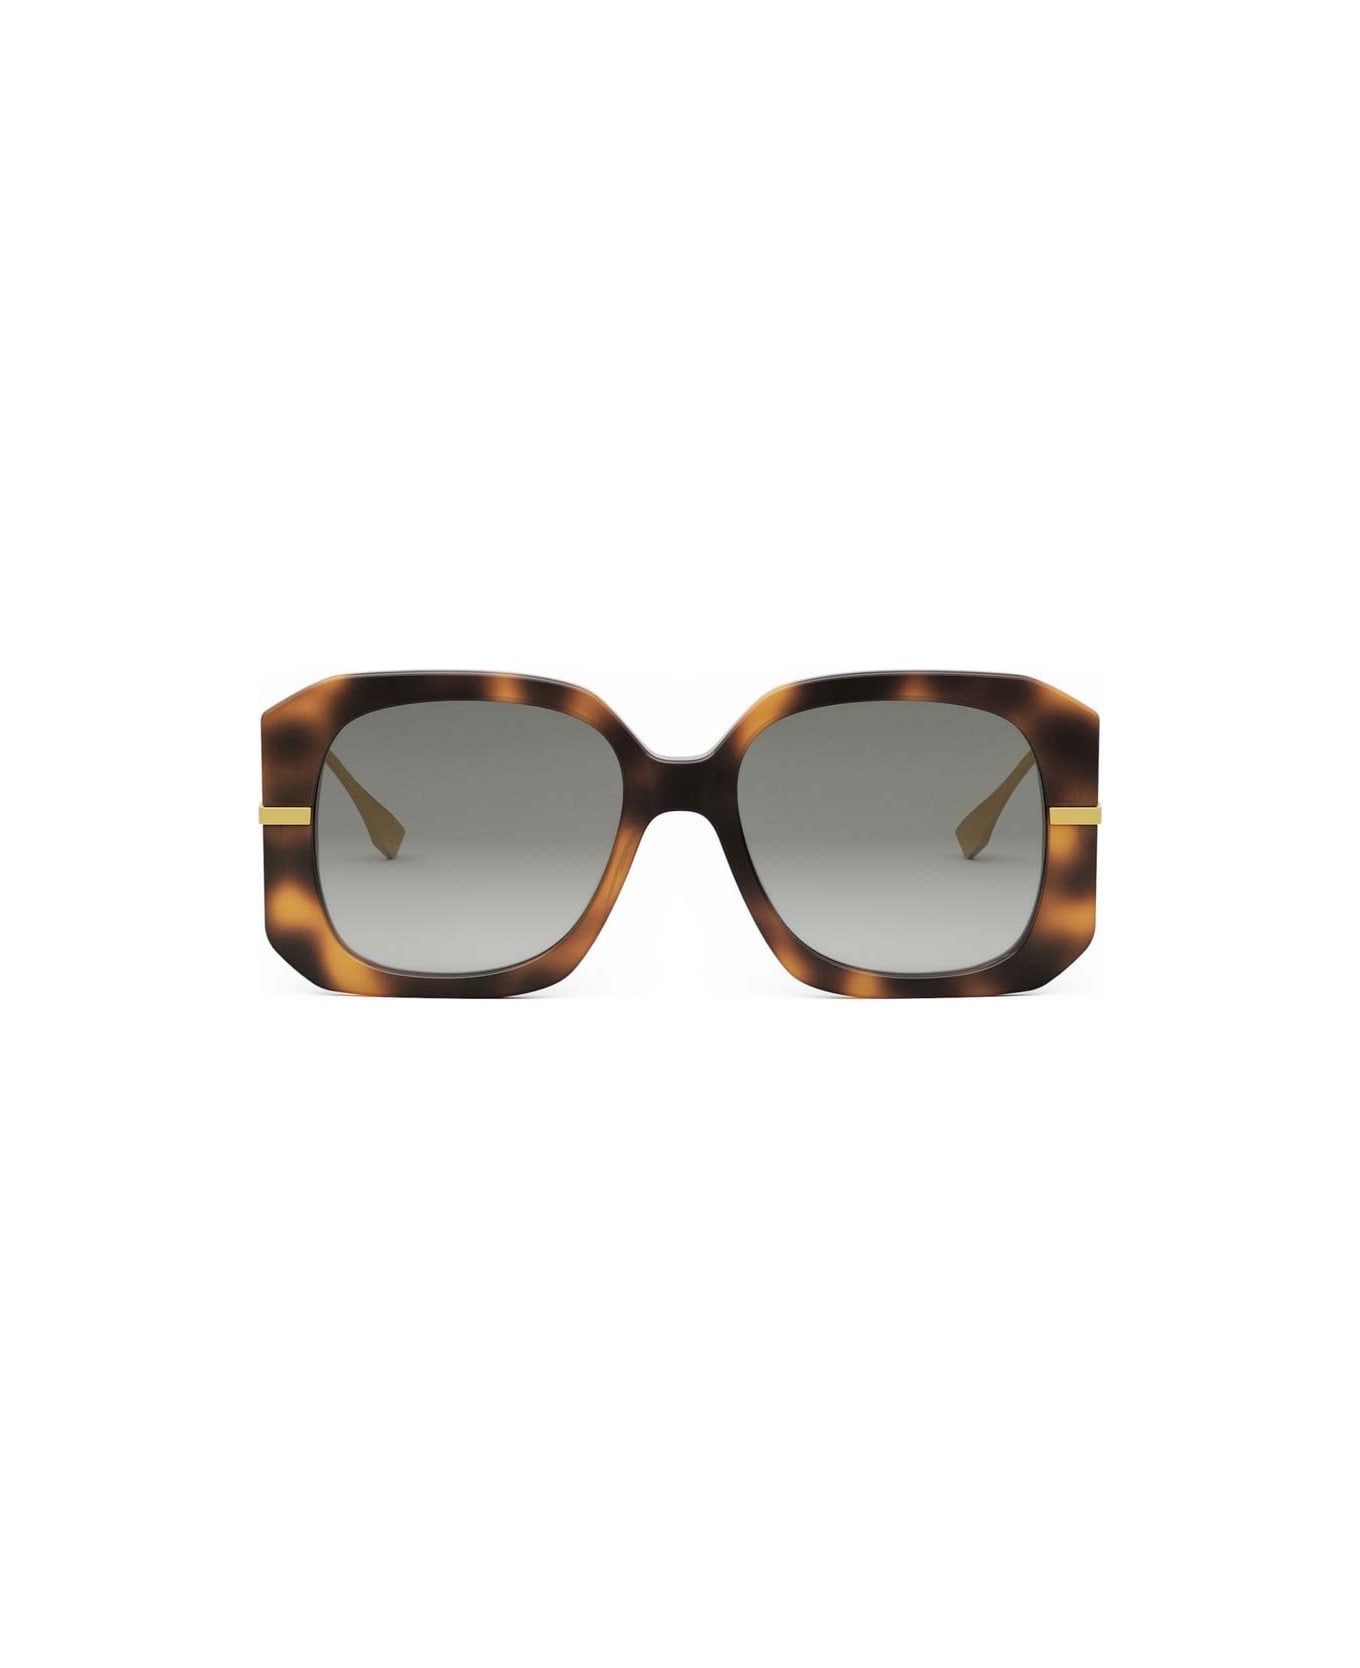 Fendi Eyewear Sunglasses - Havana/Grigio sfumato サングラス